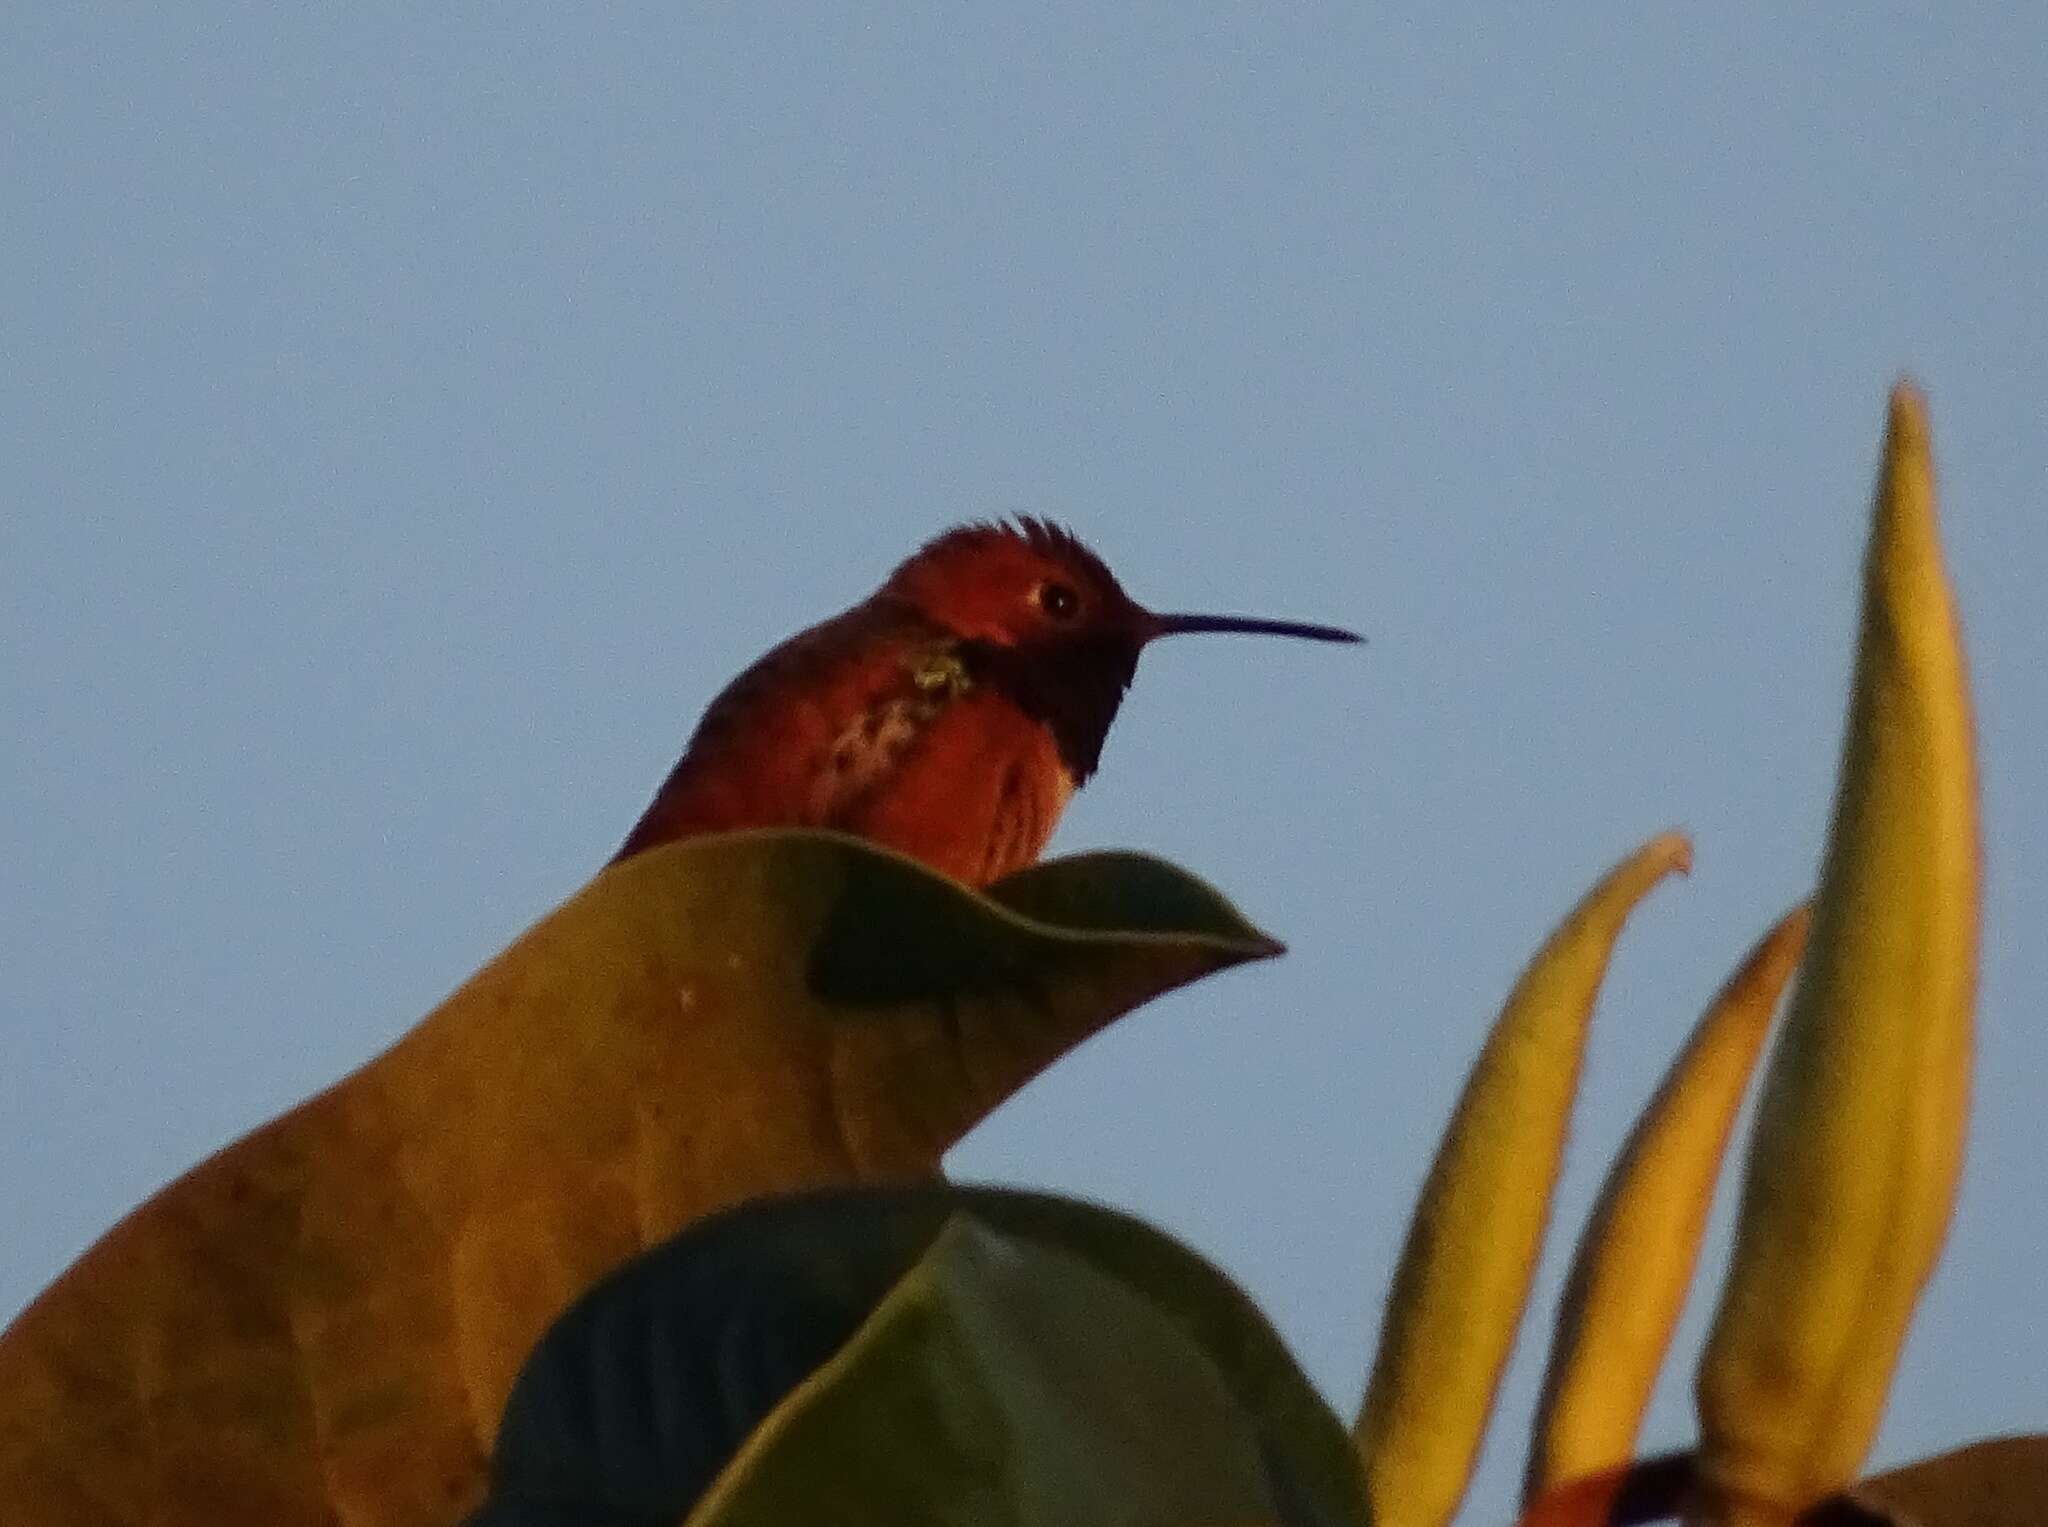 Image of Allen's Hummingbird